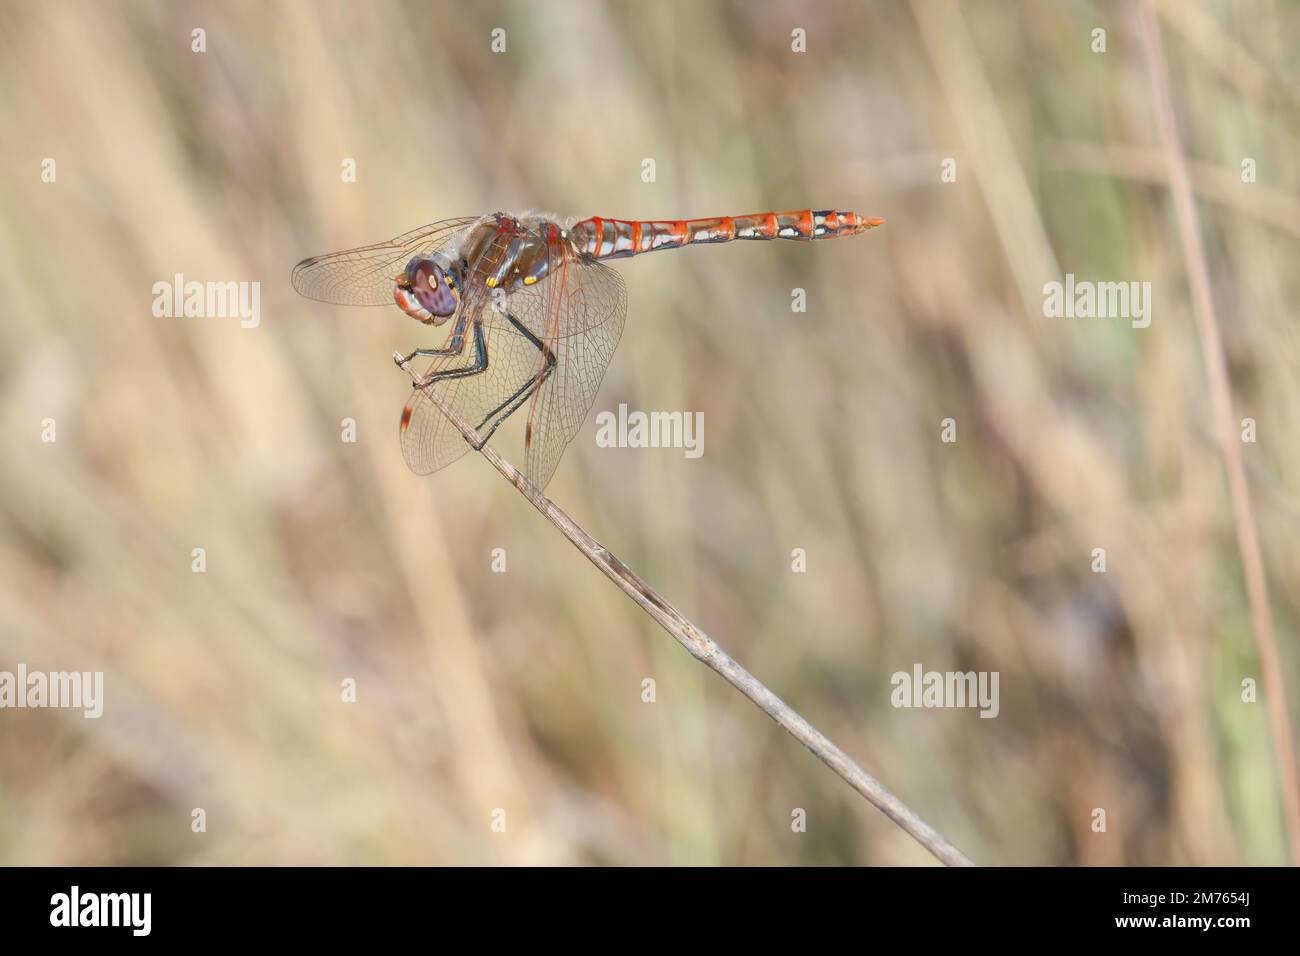 Im Stone Oak Park in San Antonio, Texas, erhebt sich eine Libelle aus Wiesenwhawk auf einem Stock. Stockfoto